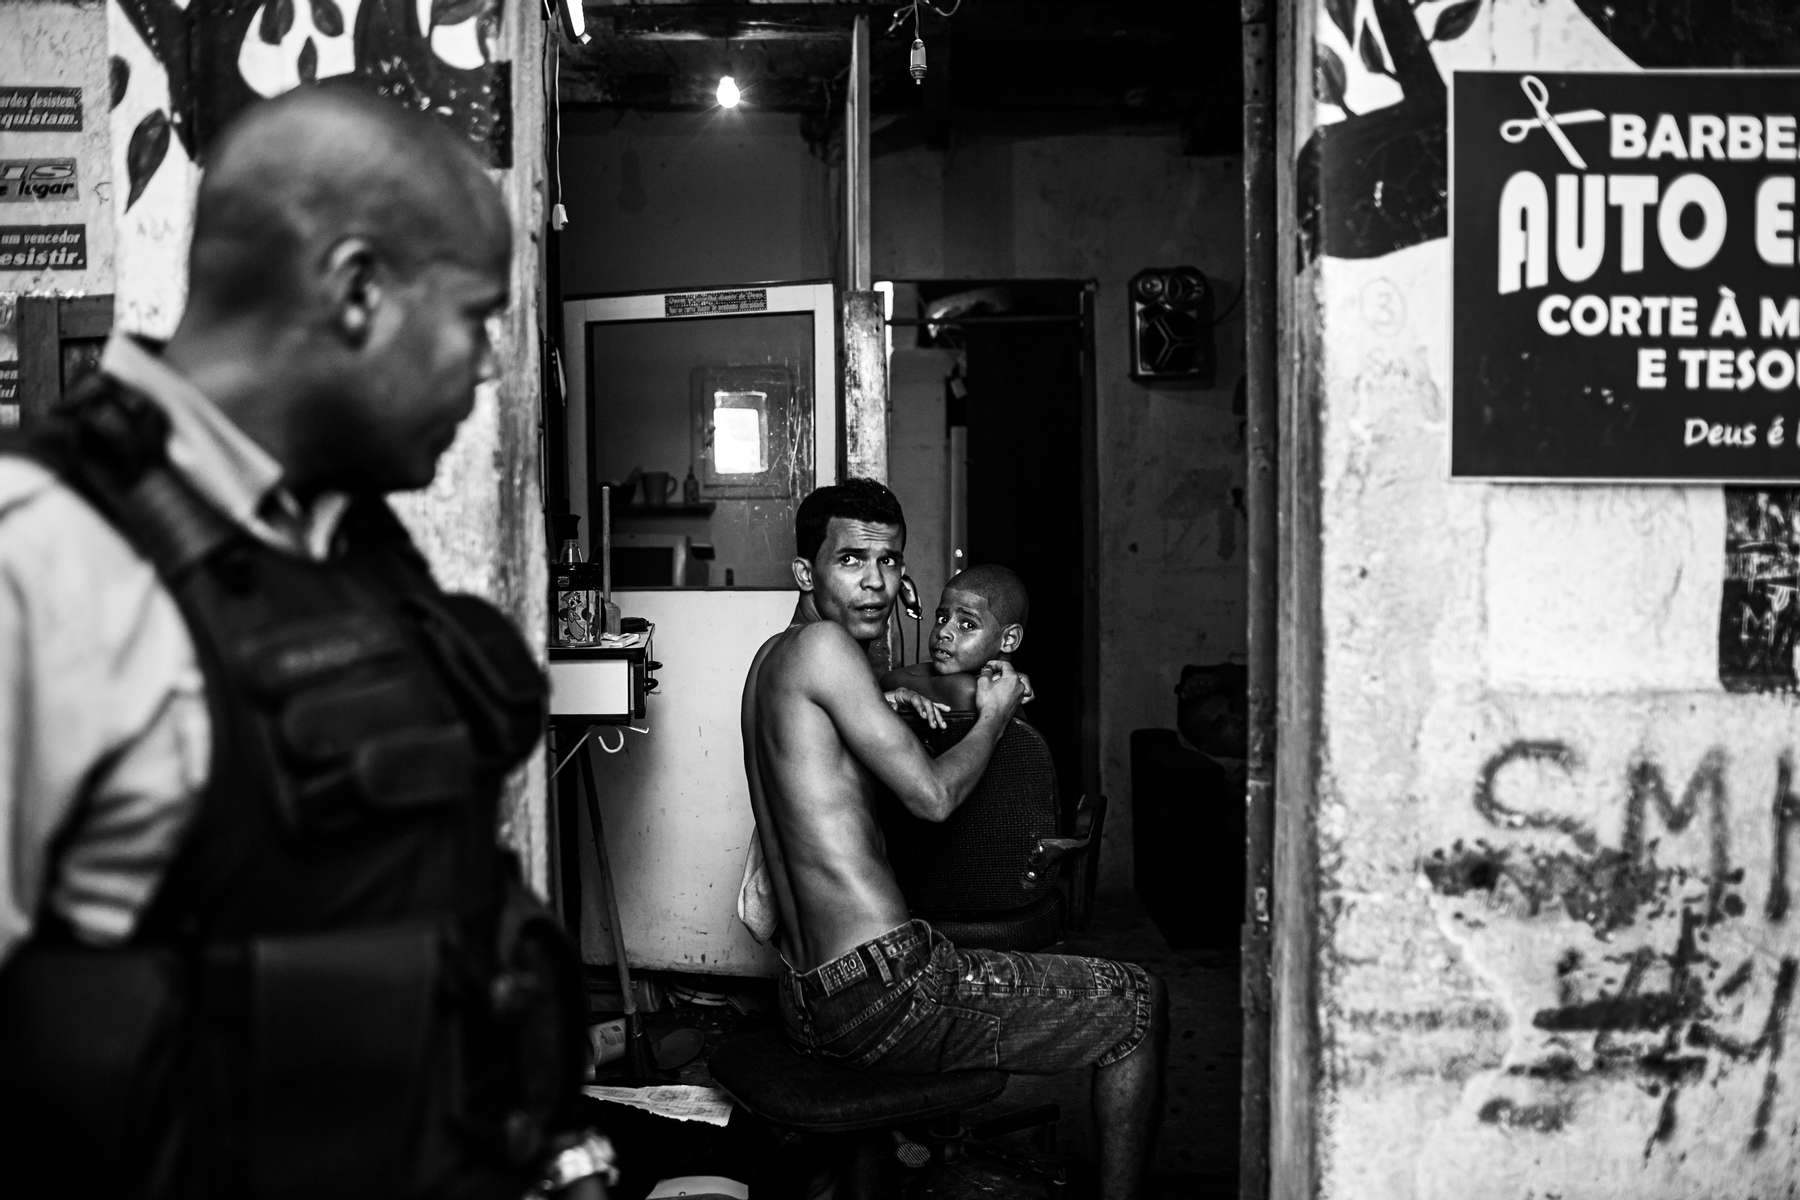 El soldado de la UPP. Franca, camina frente a una barbería mientras su dueño le corta el pelo a un cliente, en la favela de Sao Carlos, en Río de Janeiro, Brasil, el 15 de marzo de 2012.